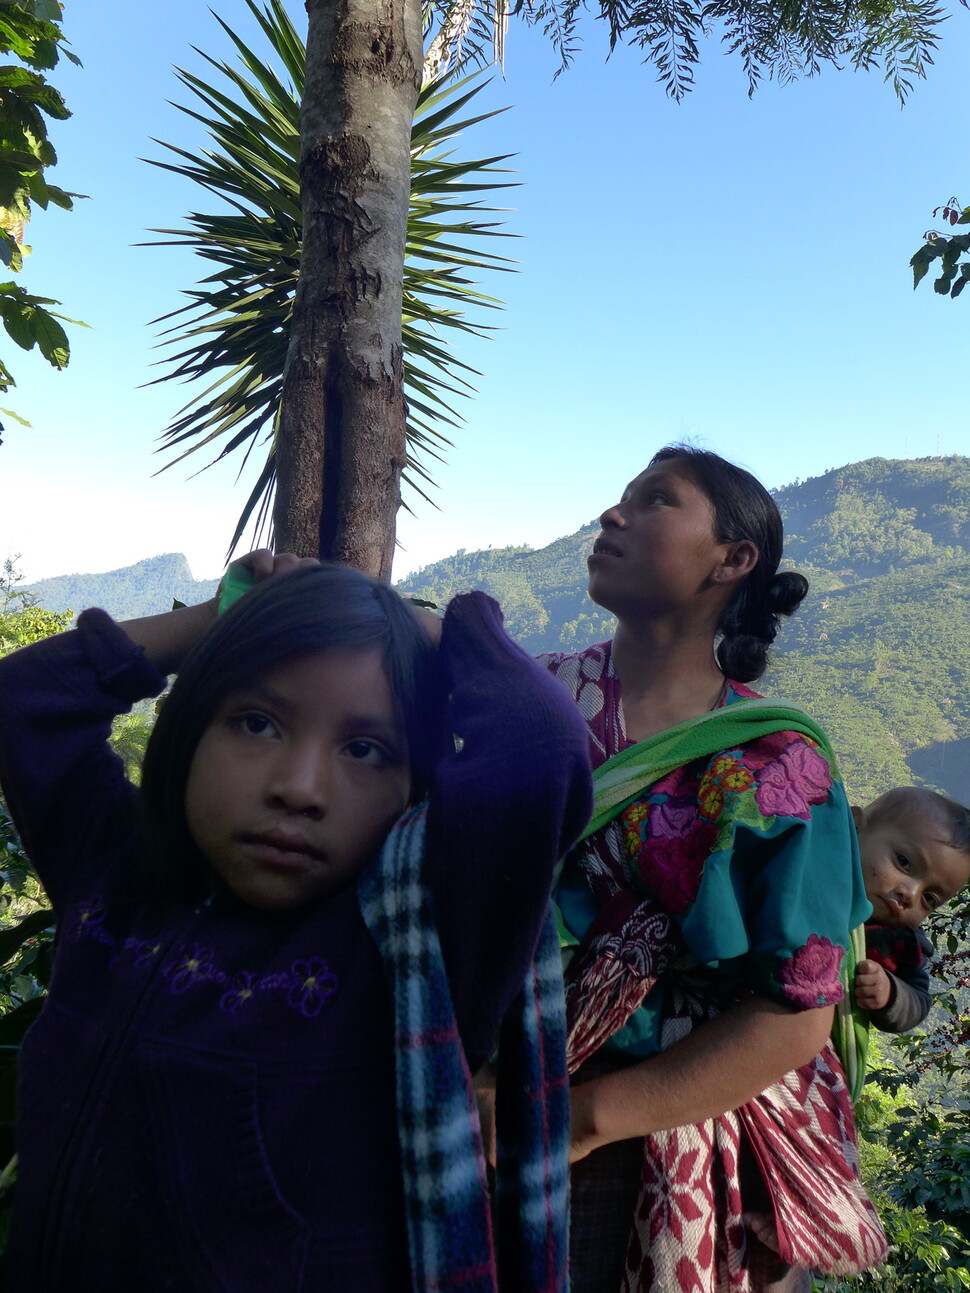 중미에서 커피를 수확하고 나르는 일은 원주민의 몫인 경우가 많다. 과테말라 원주민 노동자는 커피를 수확할 때 아이들만 숙소에 둘 수 없어 함께 나온다. 서필훈 제공